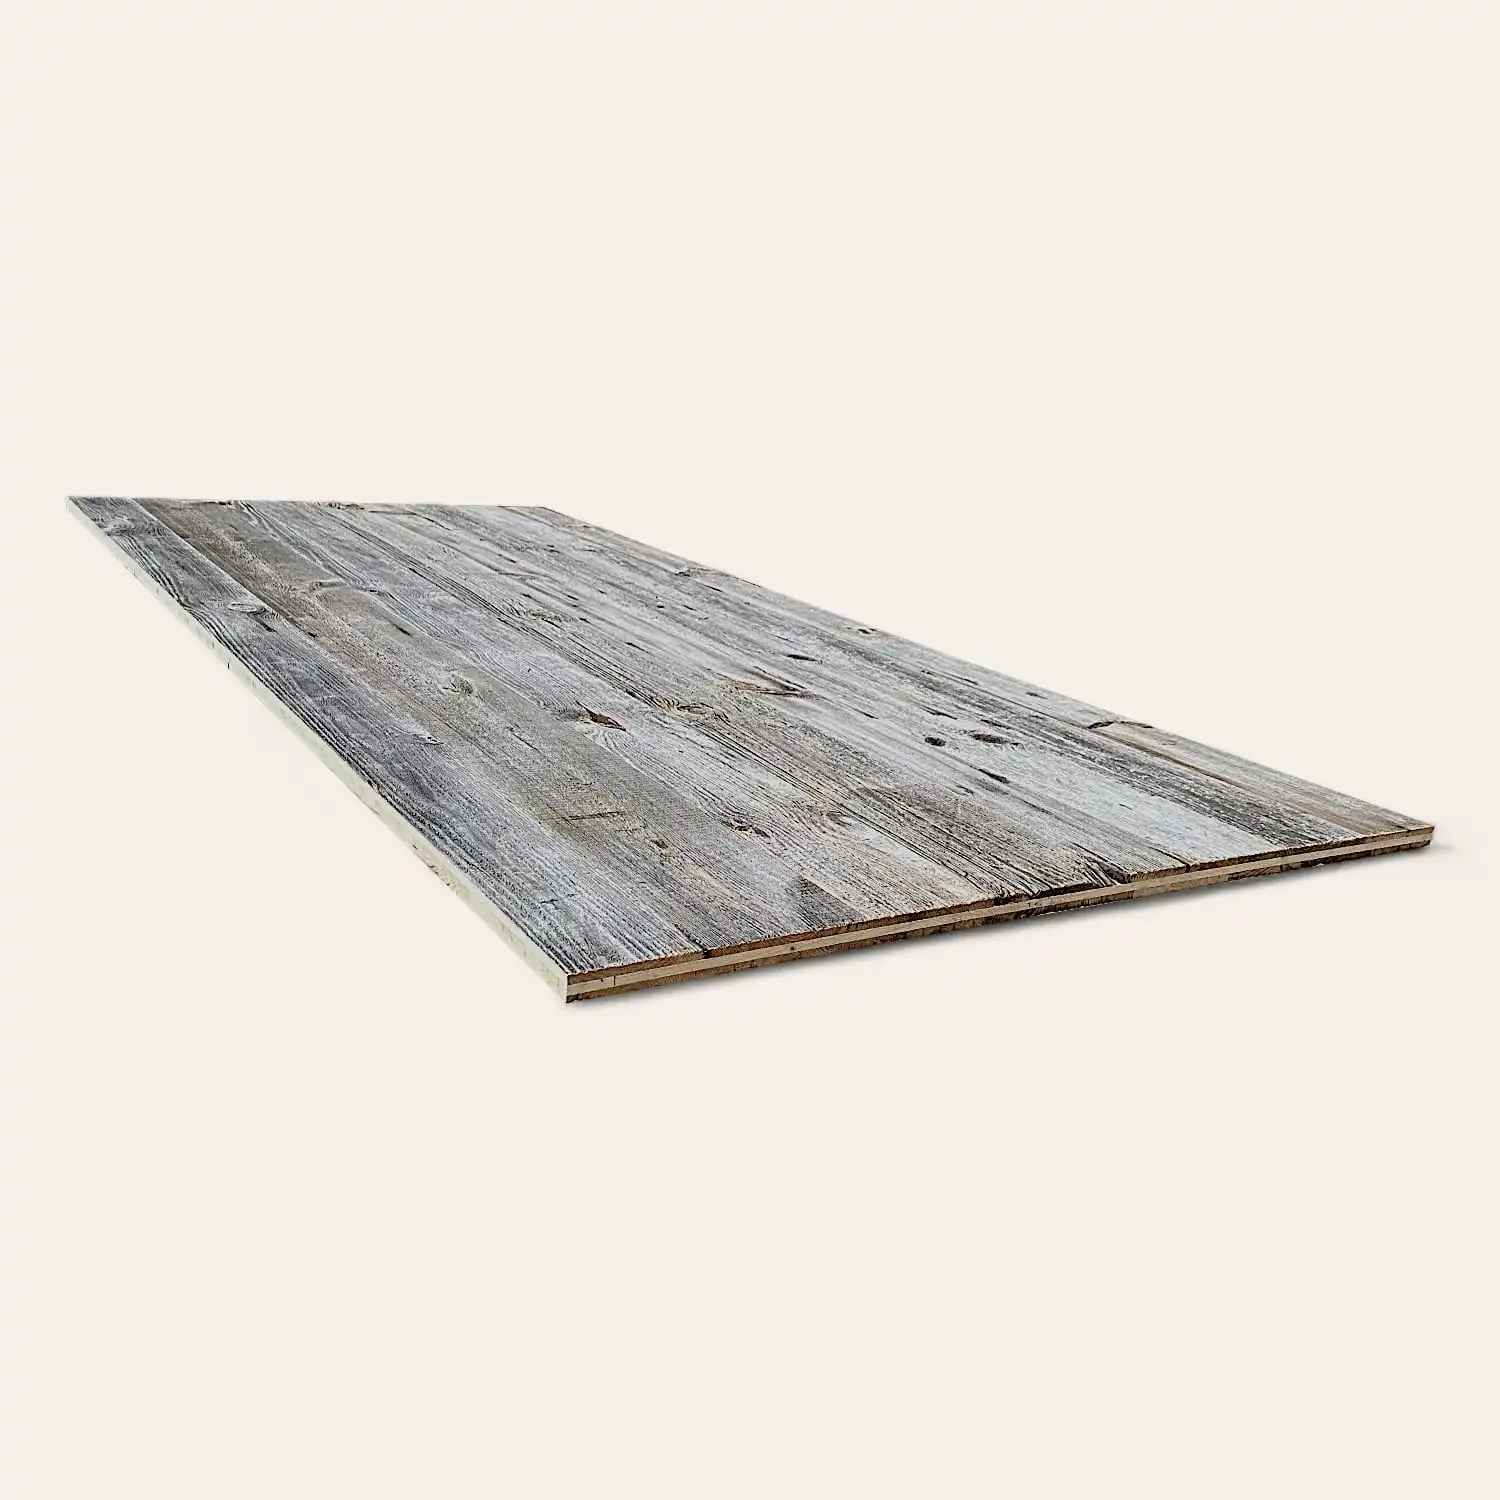  Une planche de bois plate au fini gris patiné, placée sur un fond blanc uni, est fabriquée à partir de vieux bois. 